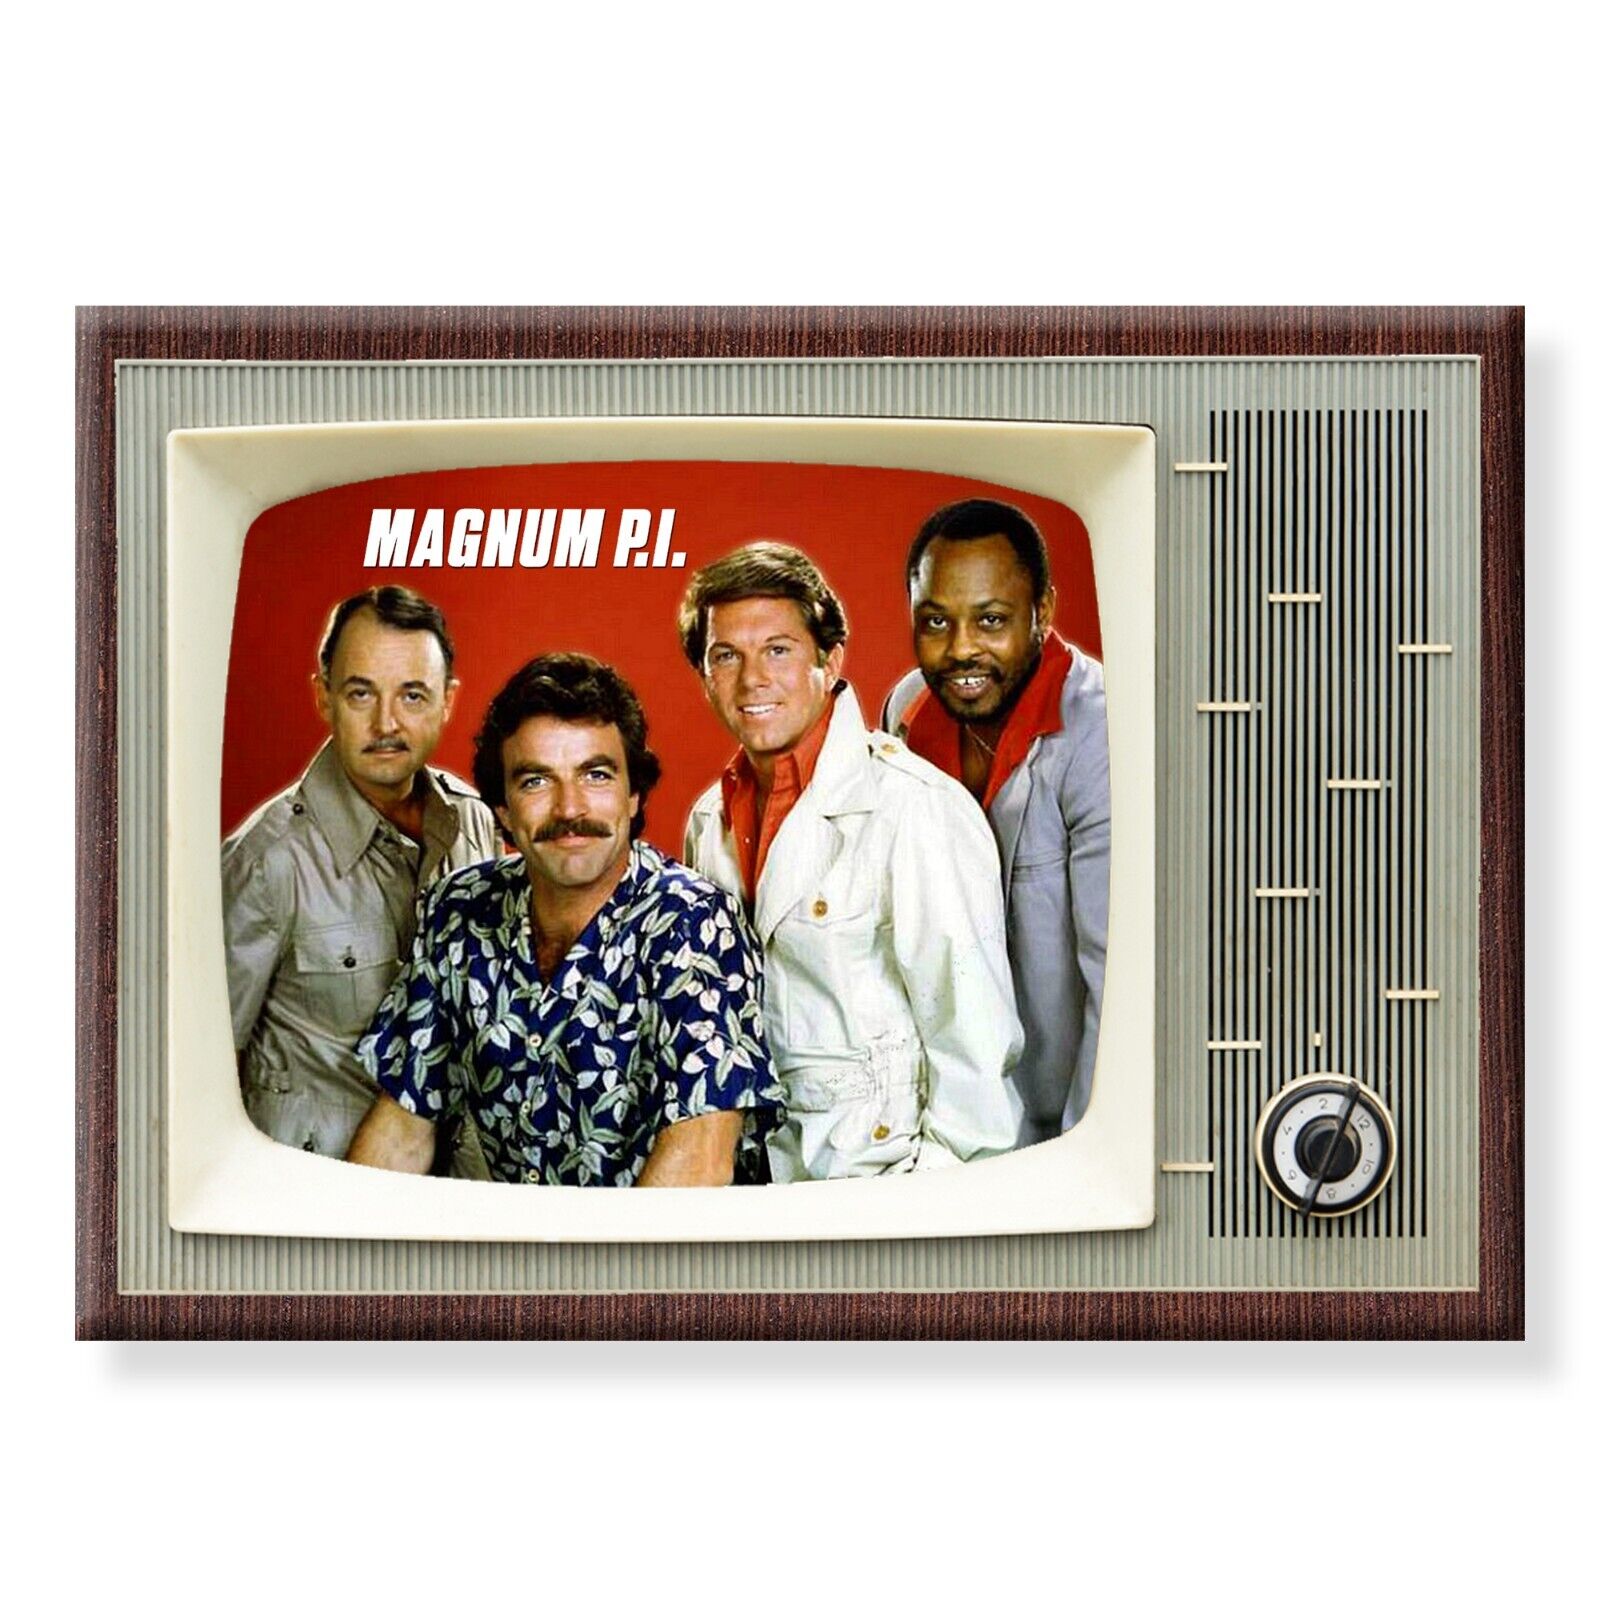 Magnum PI TV Show Retro 3.5 inches x 2.5 inches Steel Fridge Magnet